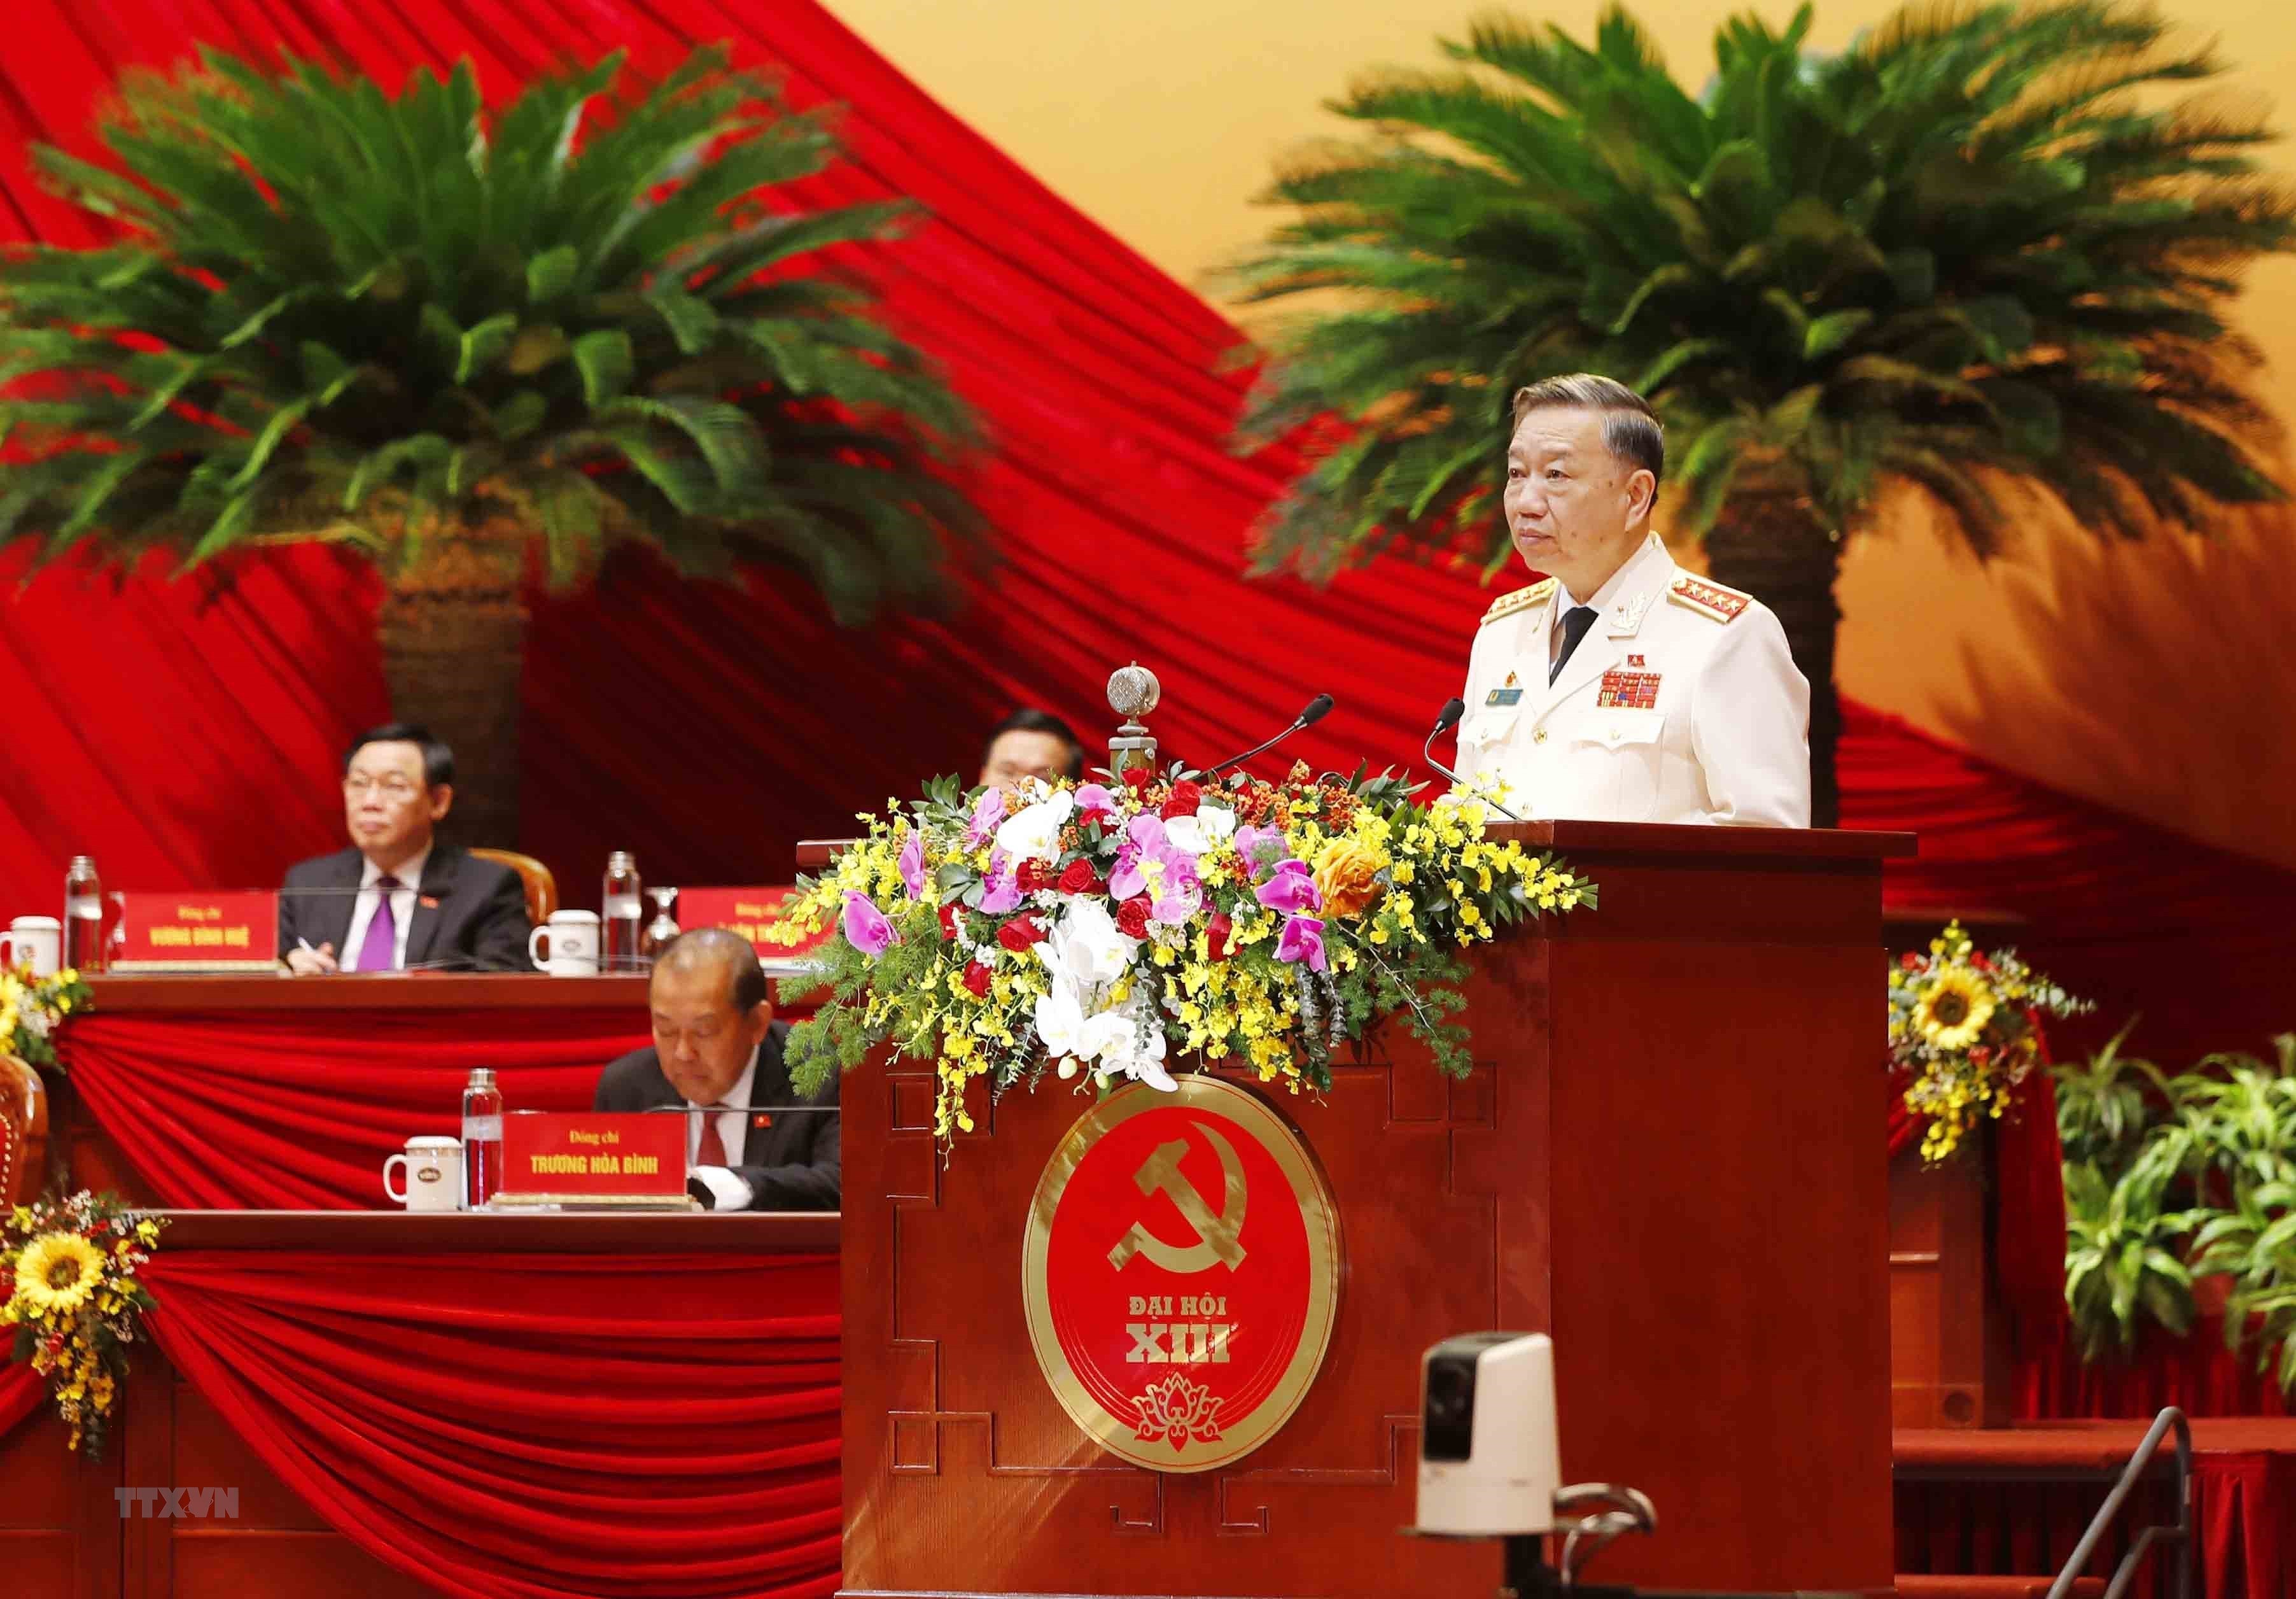 Bộ trưởng Bộ Công an Tô Lâm, Ủy viên Bộ Chính trị, Bí thư Đảng ủy Công an Trung ương đã phát biểu về vấn về đổi mới toàn diện, xây dựng lực lượng Công an nhân dân